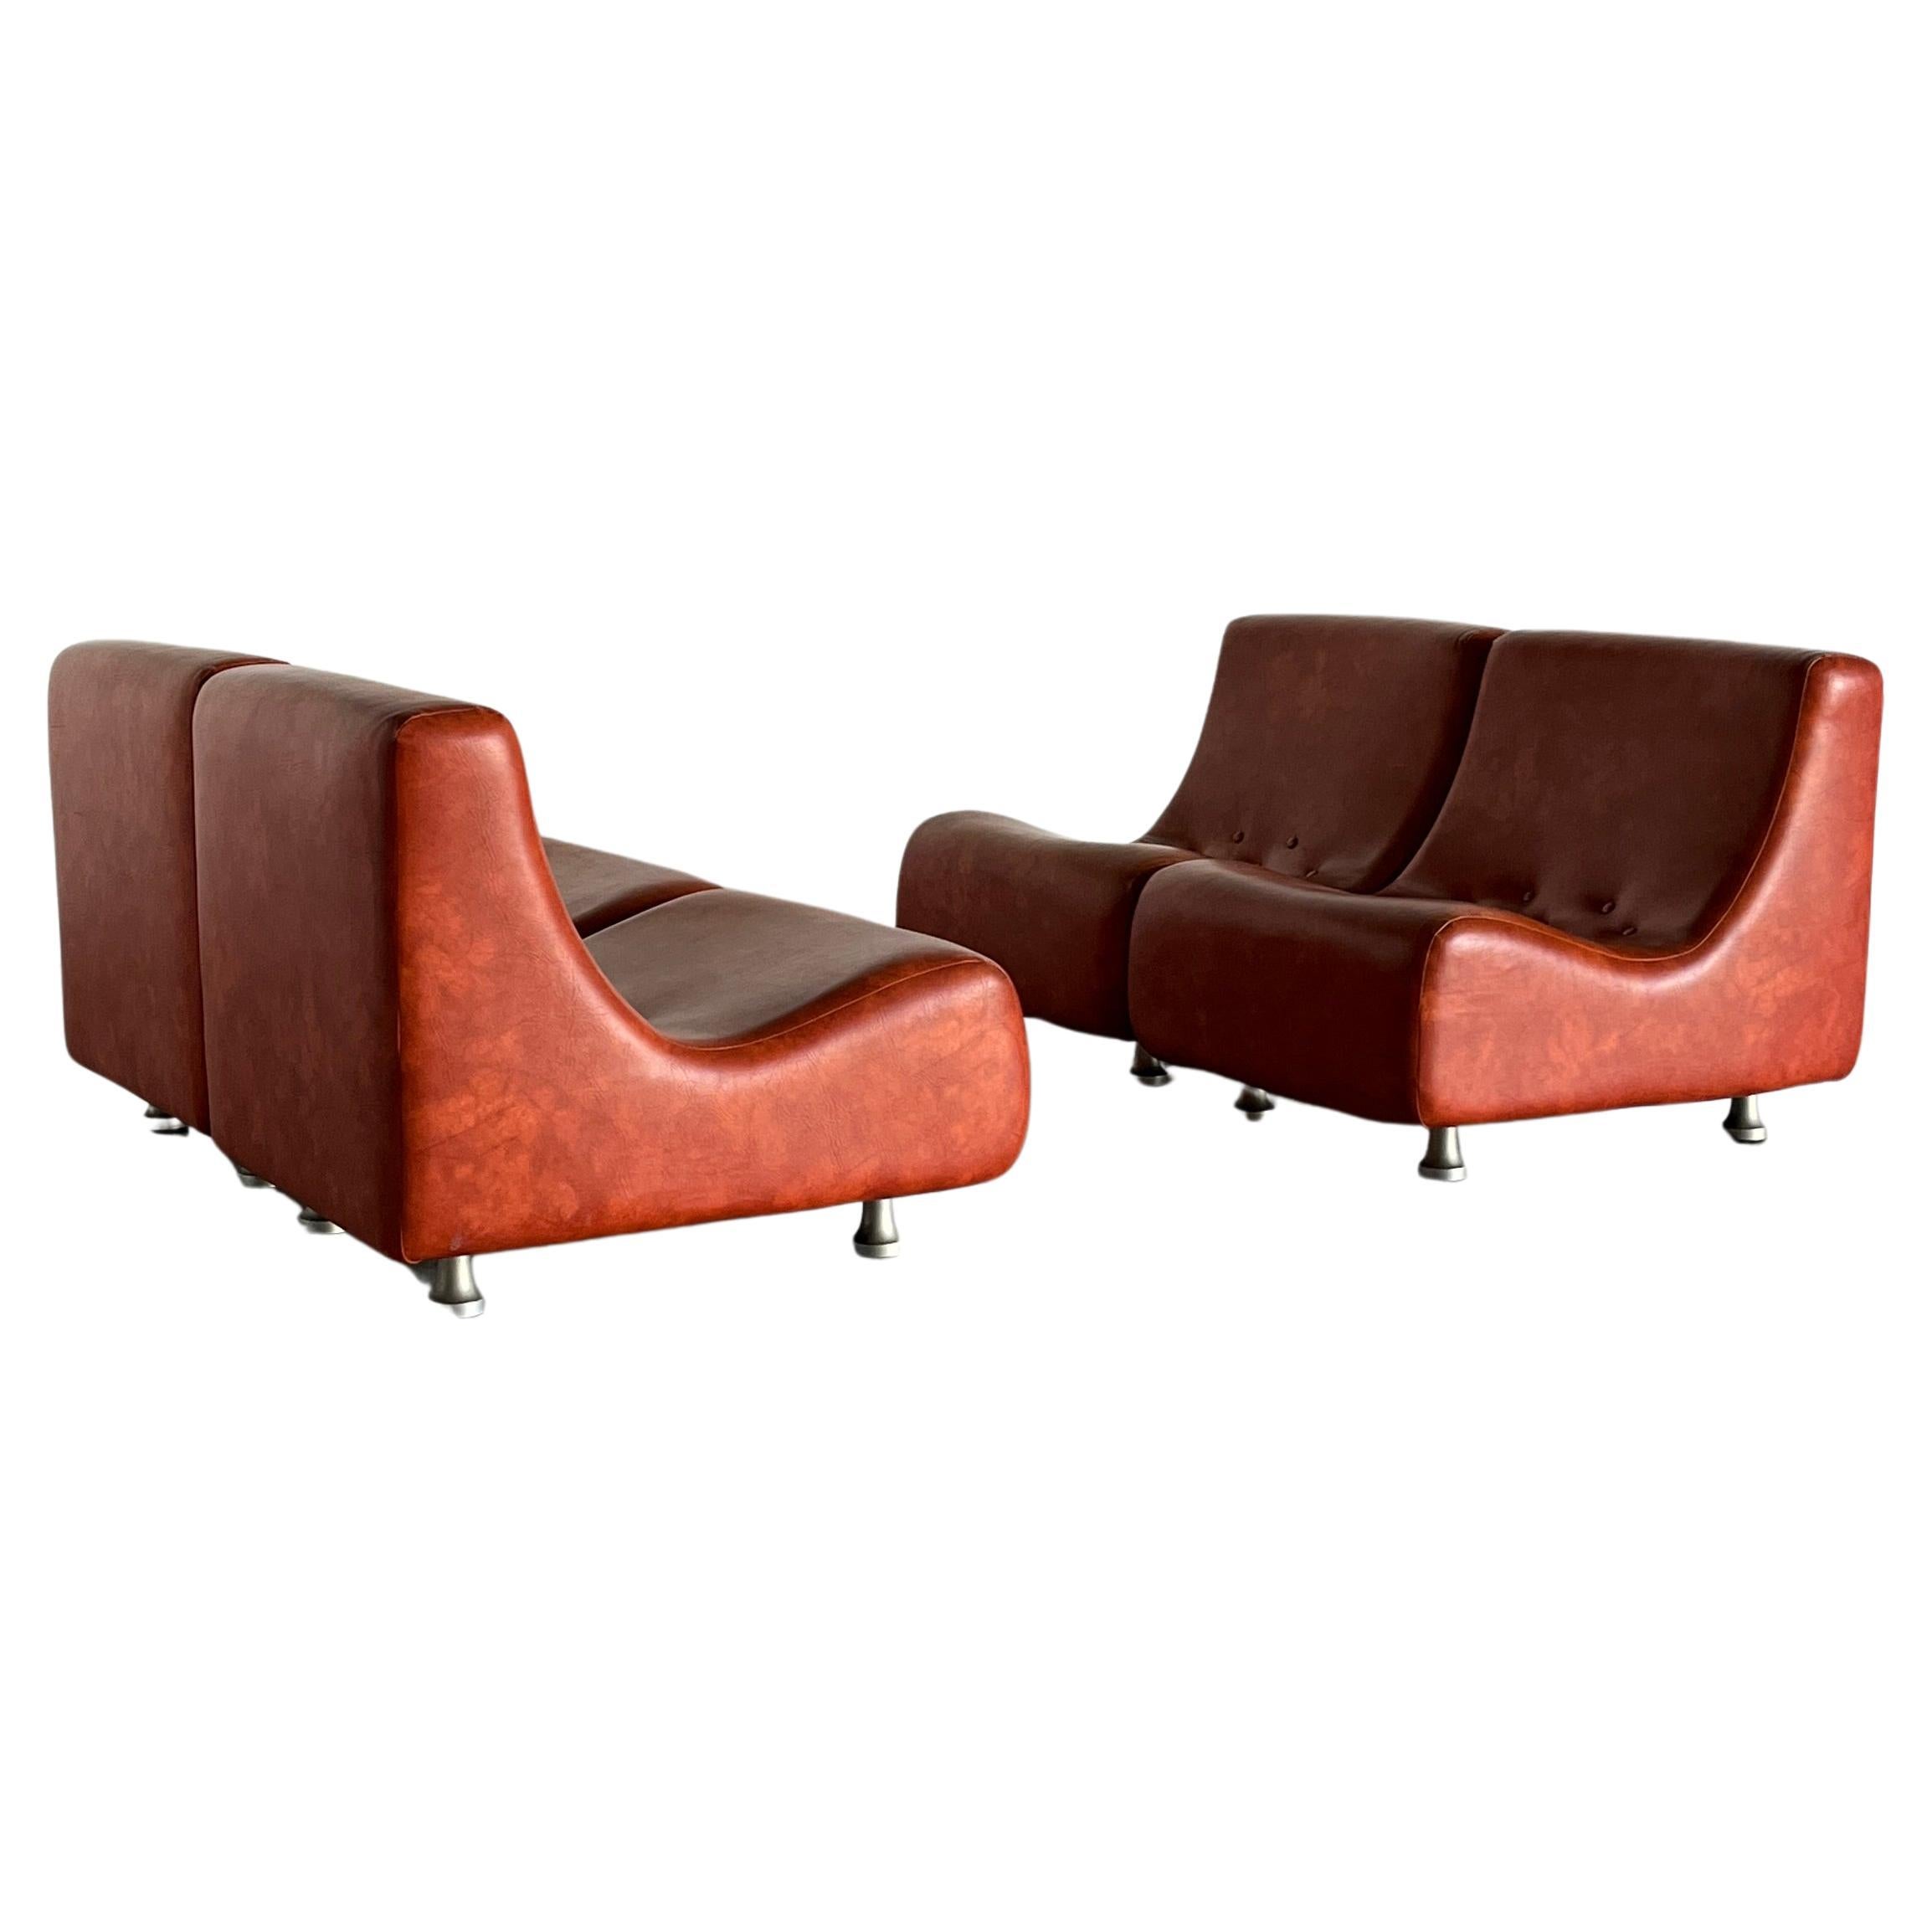 Ensemble de sièges de salon ou canapé modulaire italien Space-age en quatre parties. 
Une forme magnifique et unique et une production de haute qualité des années 1970 dans un épais revêtement en similicuir brun rougeâtre.
Dans le style des designs